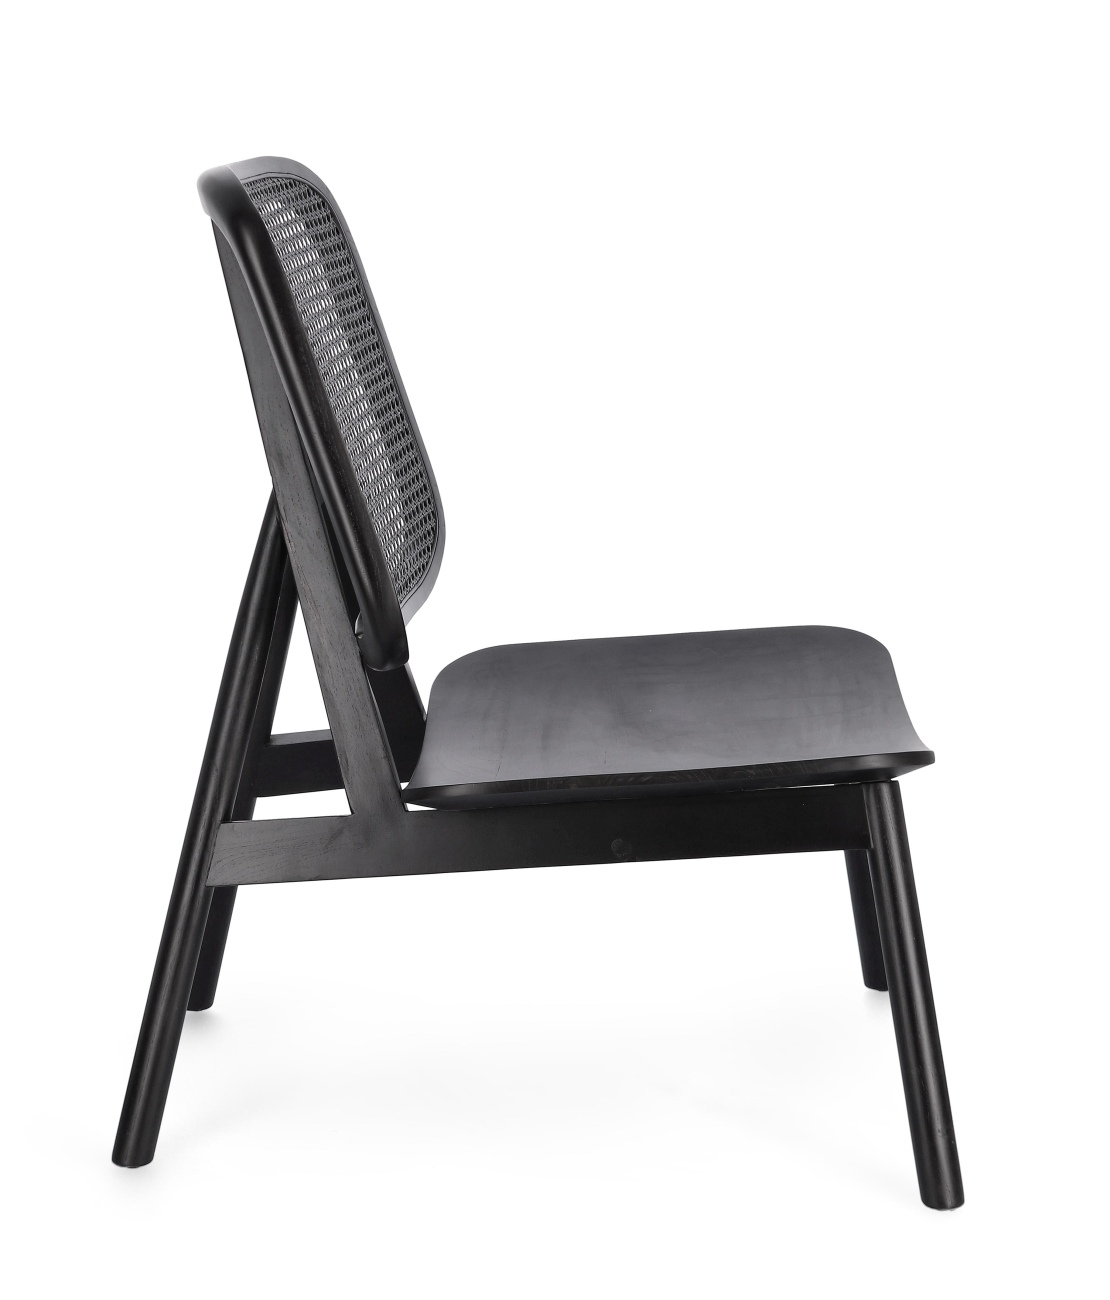 Der Sessel Yves überzeugt mit seinem modernen Stil. Gefertigt wurde er aus Teakholz, welches einen schwarzen Farbton besitzt. Die Rückenlehne ist aus Rattan und hat eine schwarze Farbe. Der Sessel besitzt eine Sitzhöhe von 38 cm.